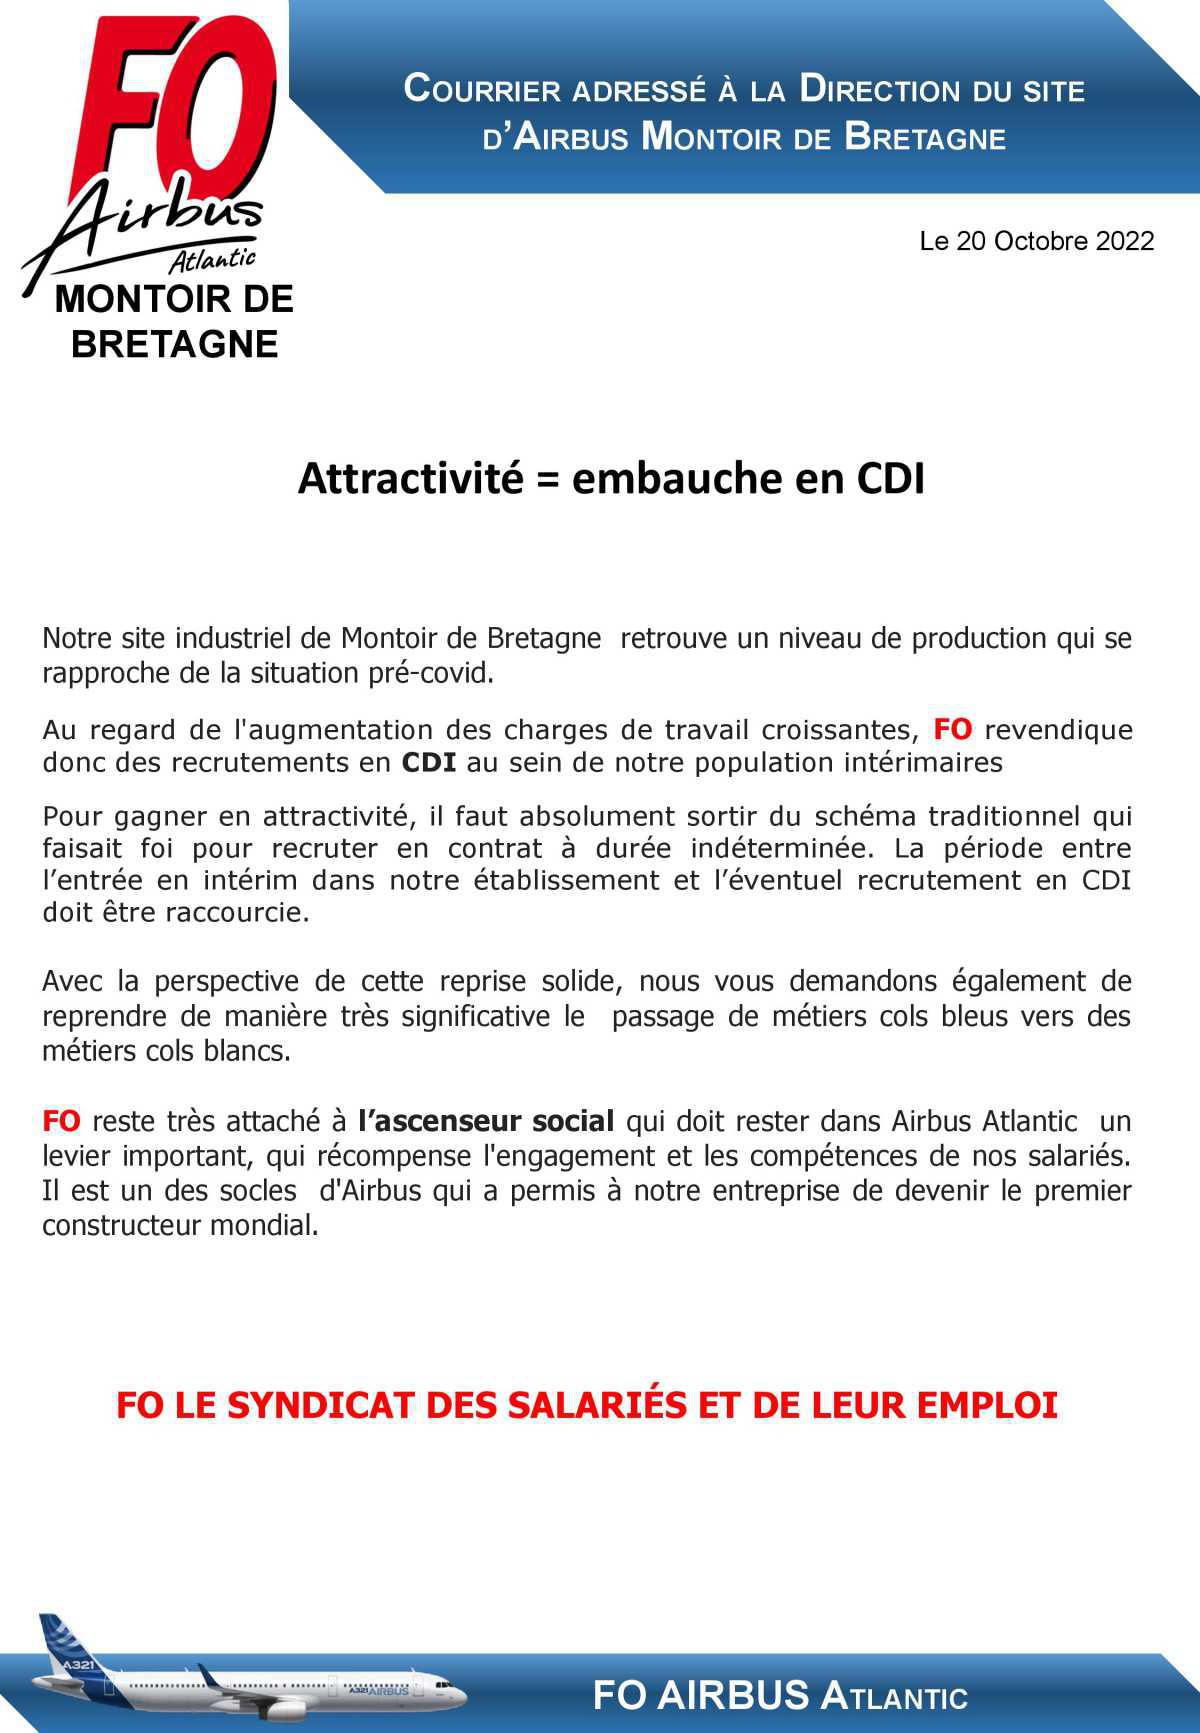 FO revendique des embauches en CDI sur le site de Montoir de Bretagne